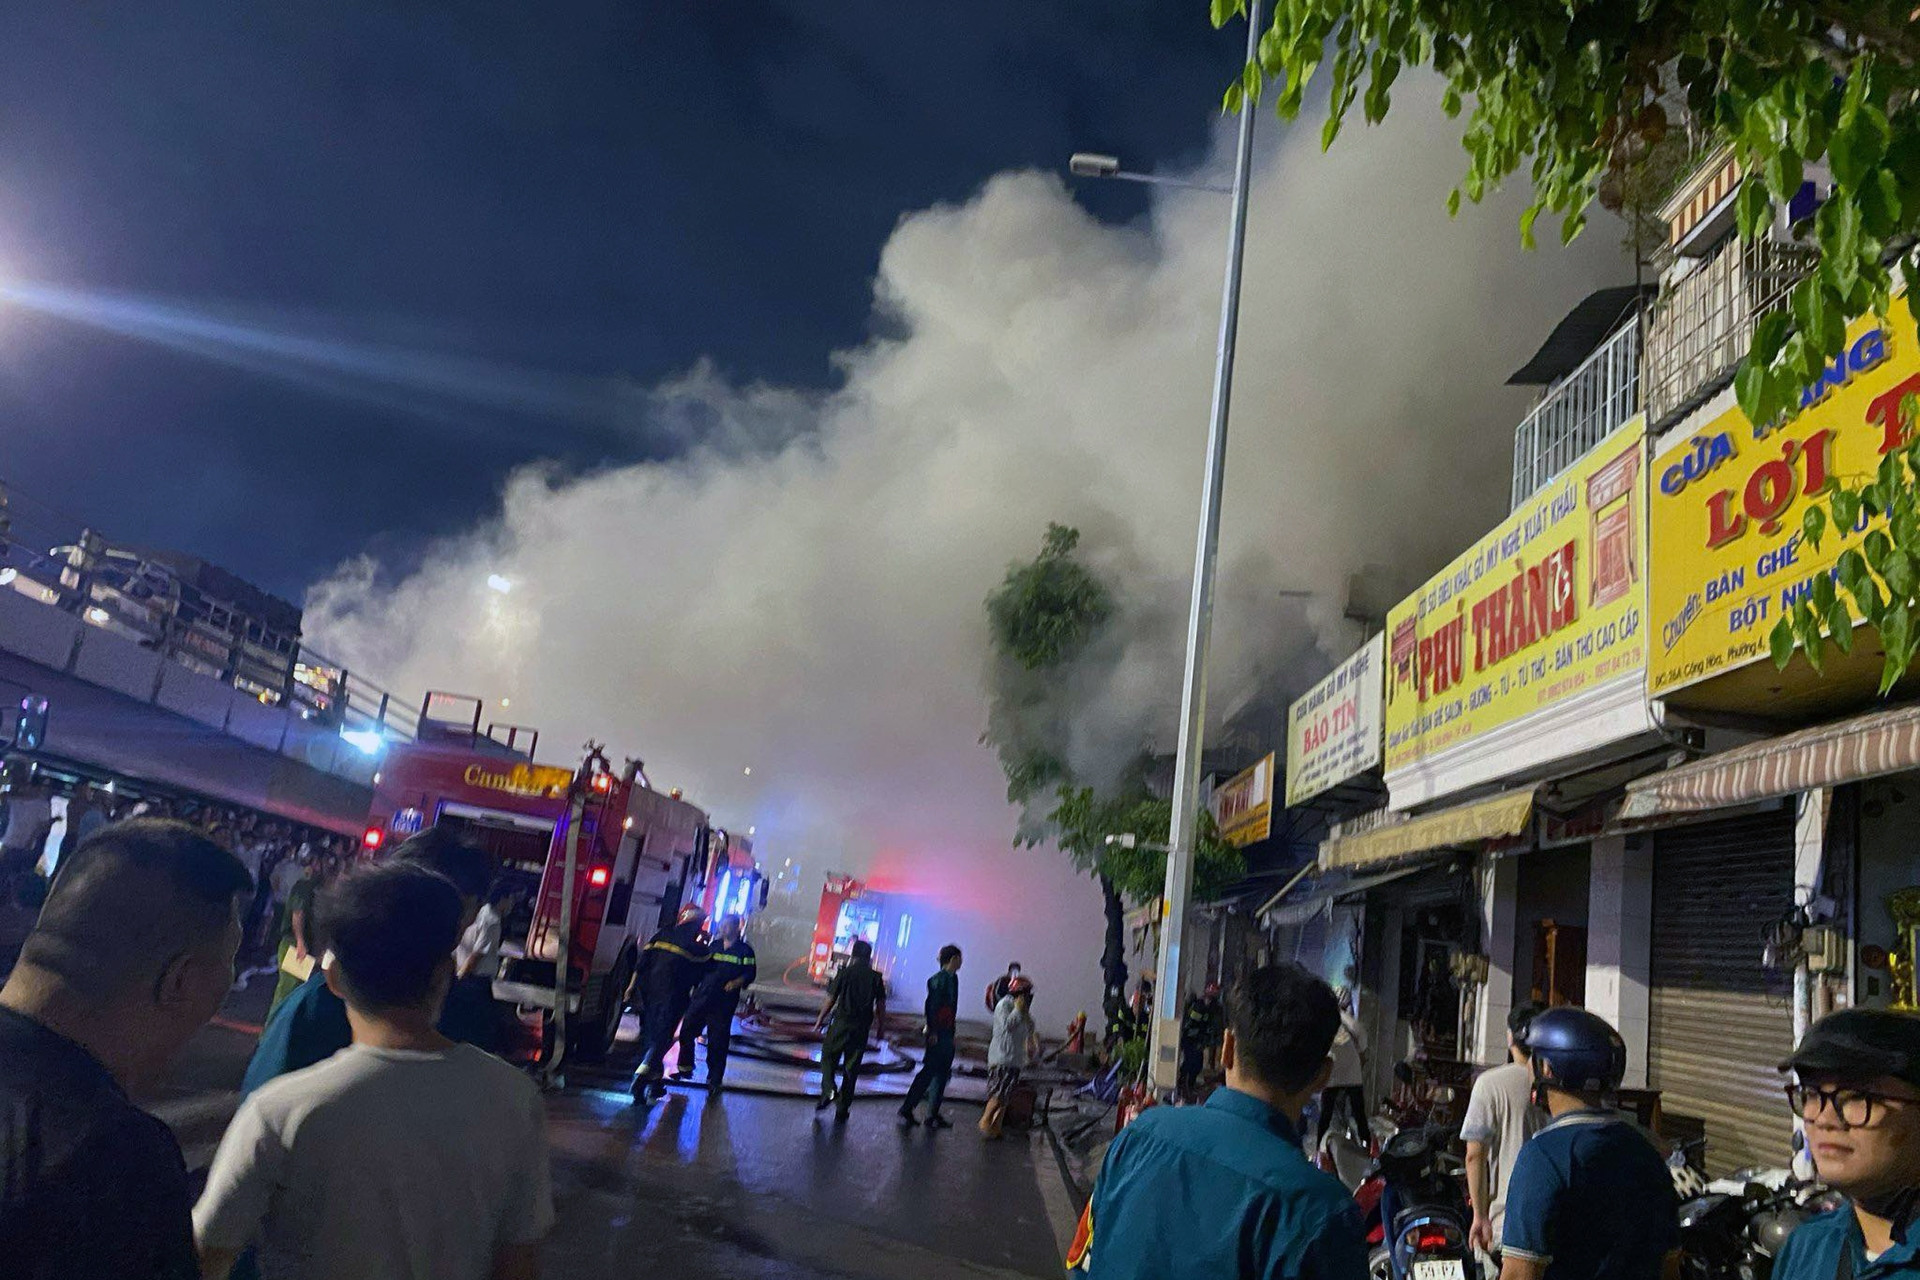  Cháy lớn ở cửa hàng đồ gỗ mỹ nghệ, cửa ngõ Tân Sơn Nhất ùn tắc nghiêm trọng 